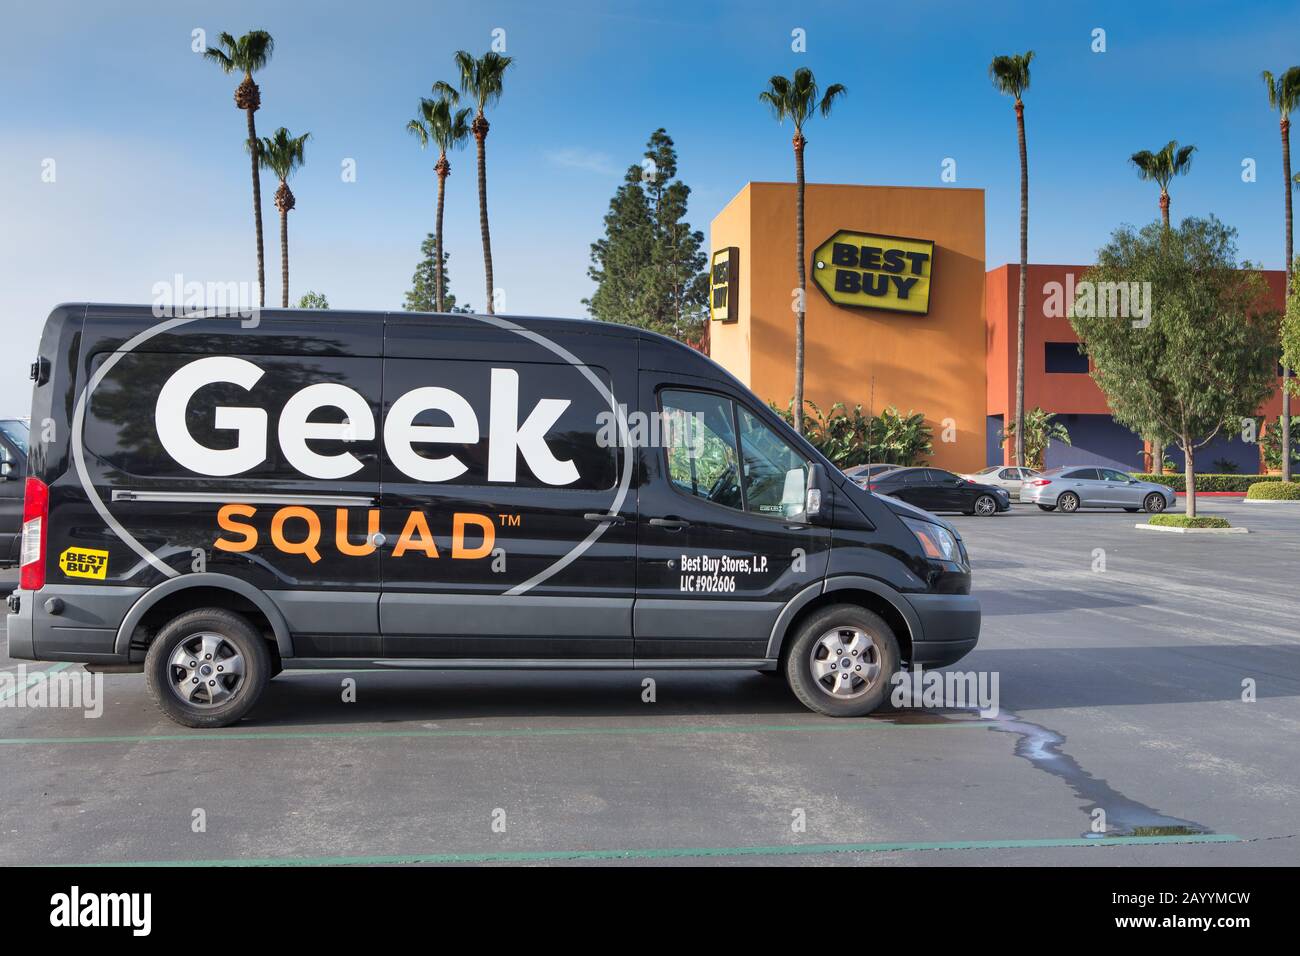 Best Buy geek squad In Home Service Technicians vans Stock Photo - Alamy